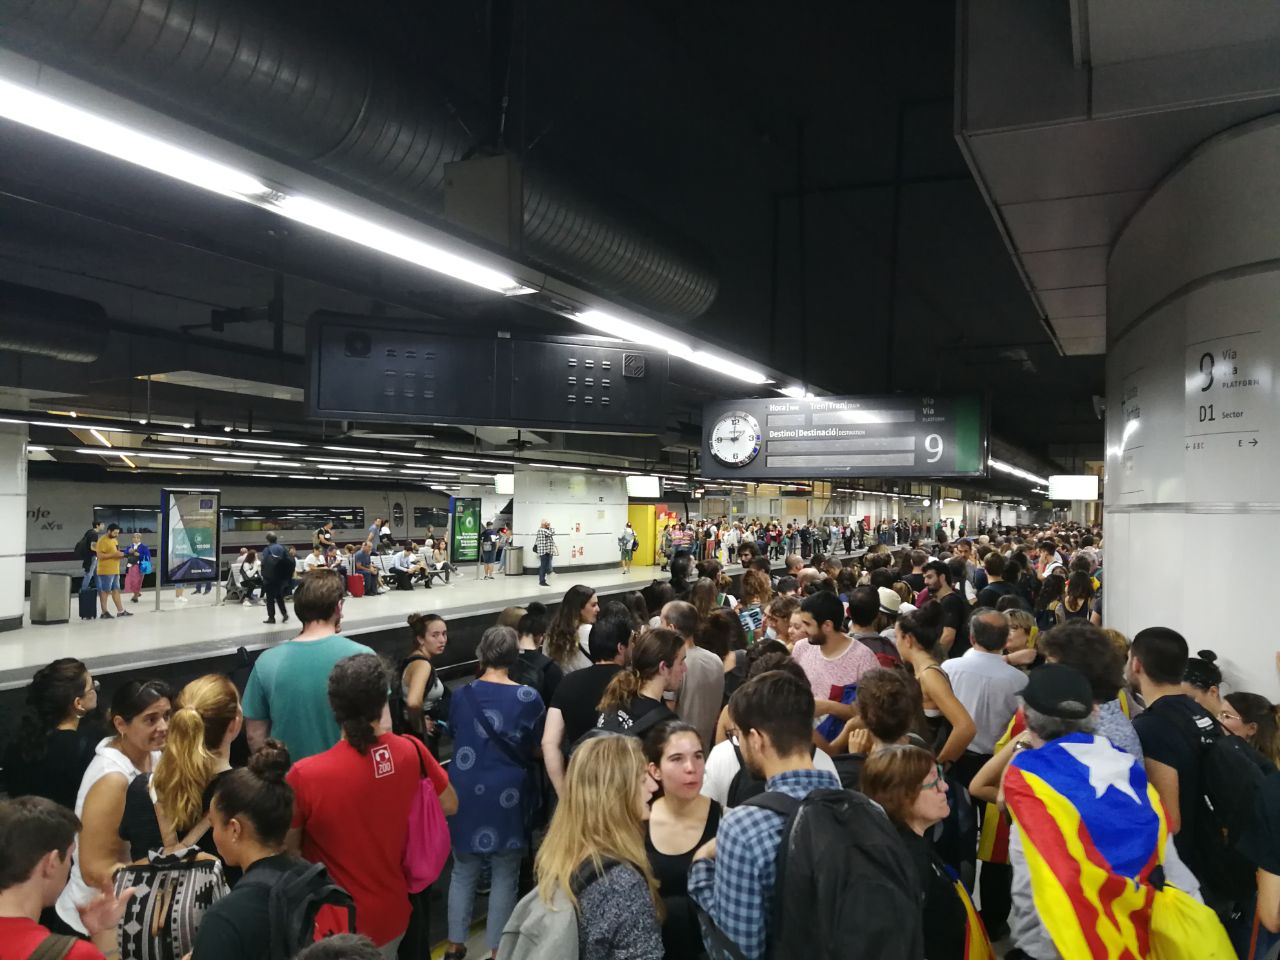 Reabren el servicio de tren al Aeropuerto del Prat, del metro no